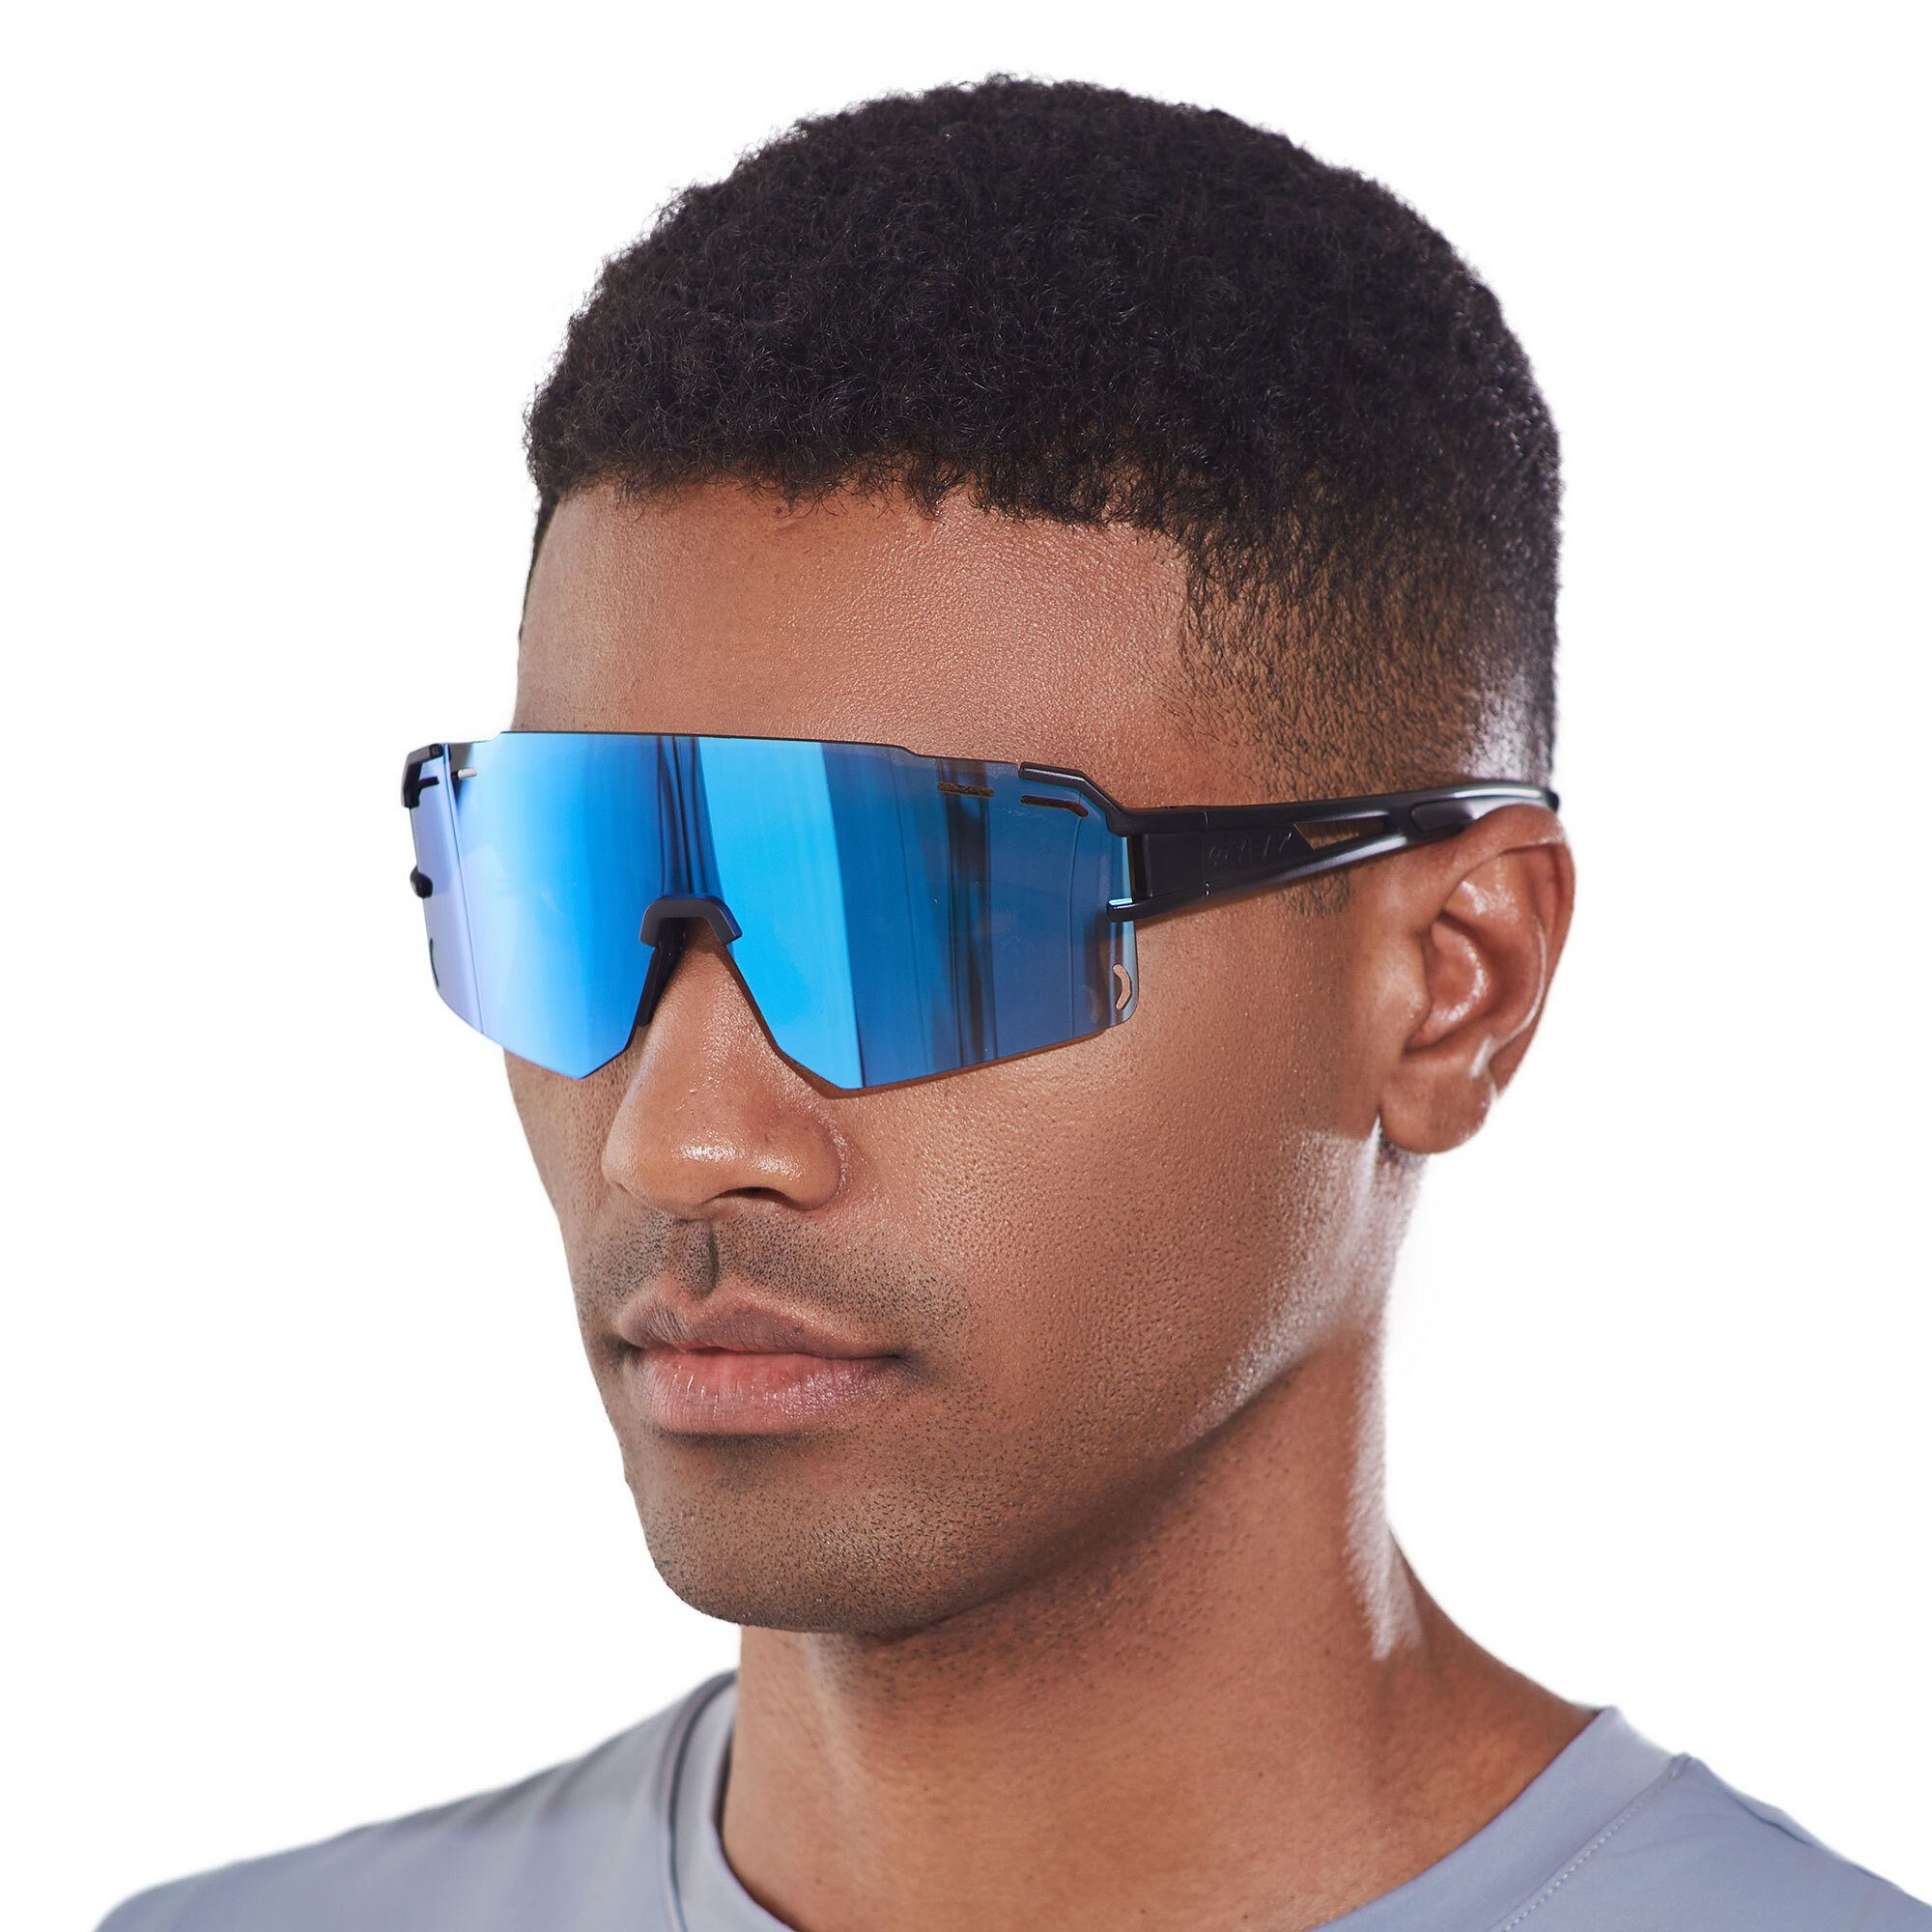 YEAZ Sportbrille SUNCRUISE sport-sonnenbrille grün, Sport-Sonnenbrille schwarz / blau